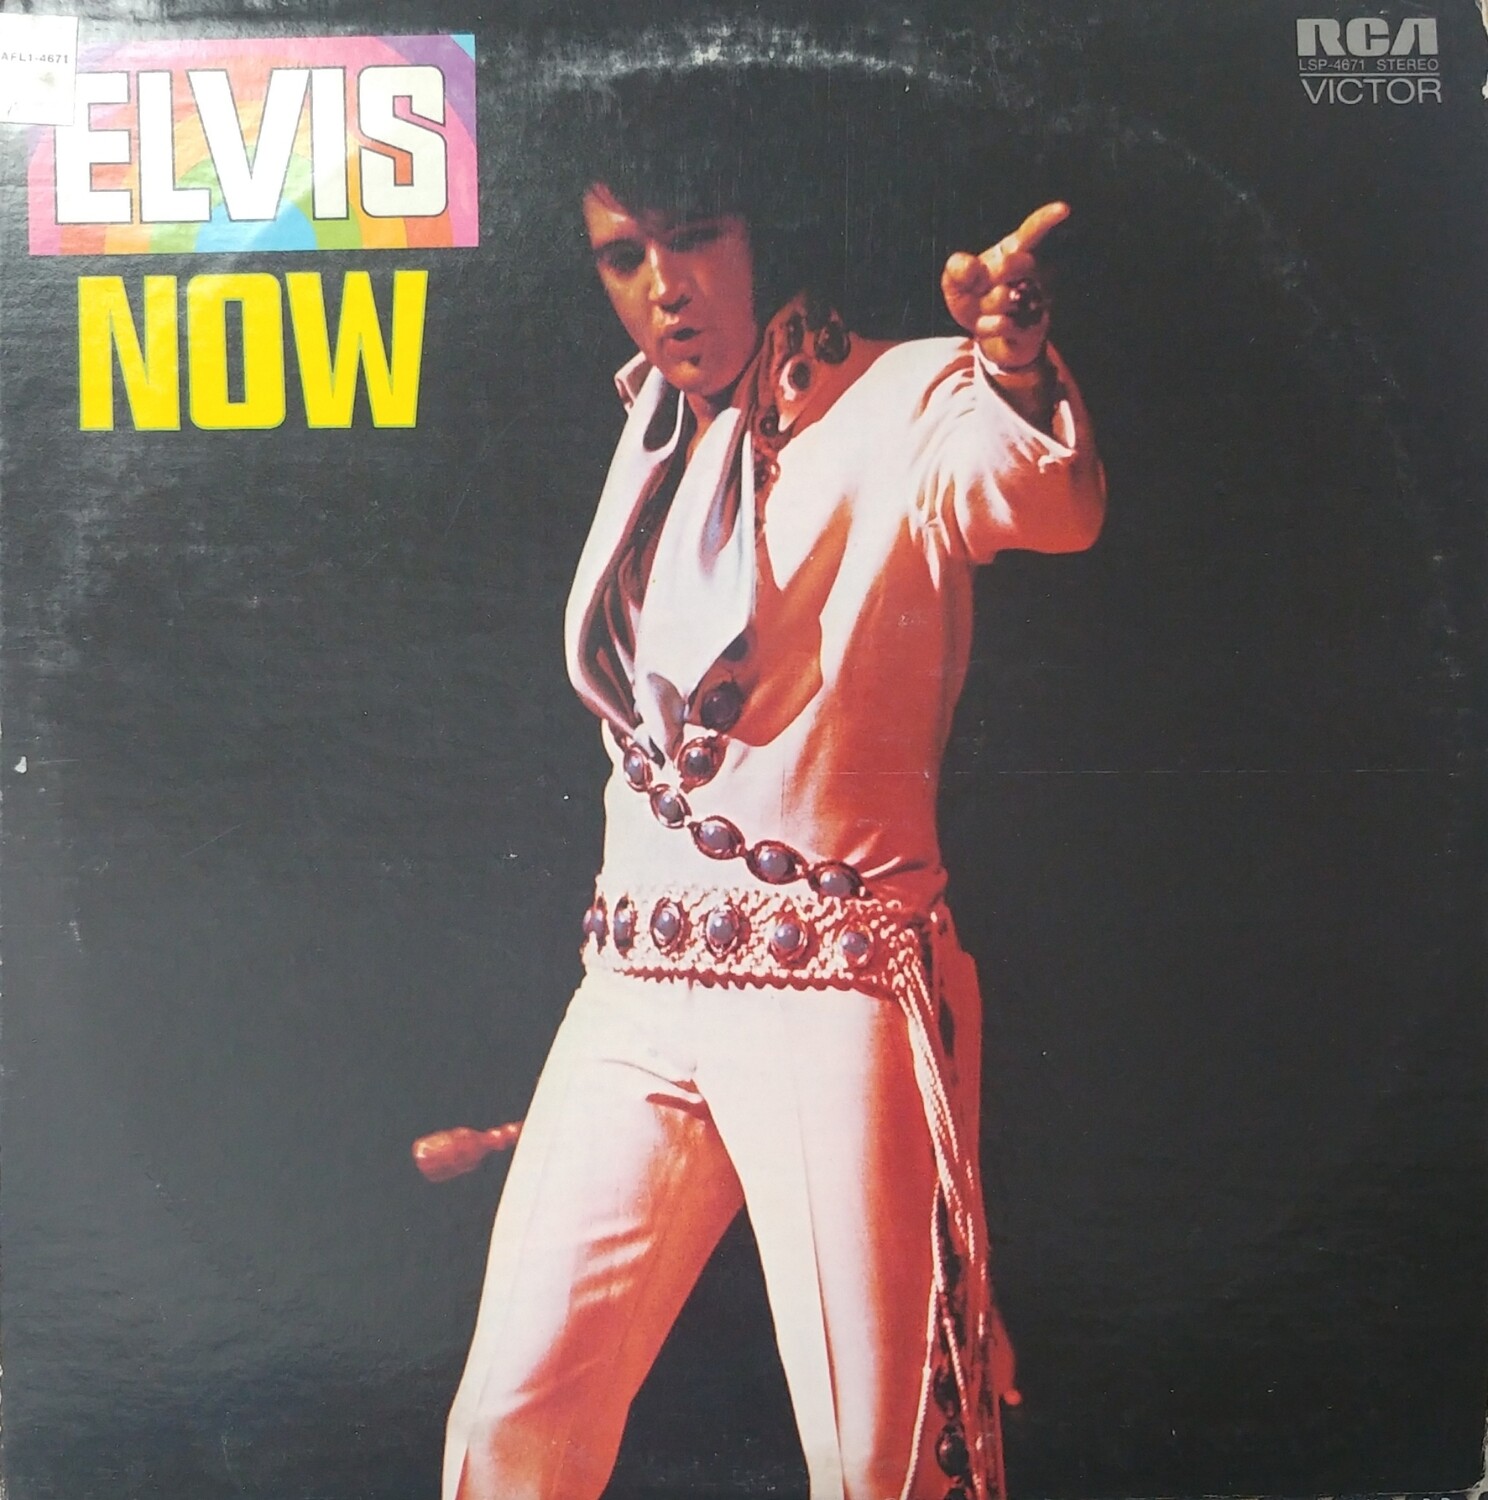 Elvis Presley - Now